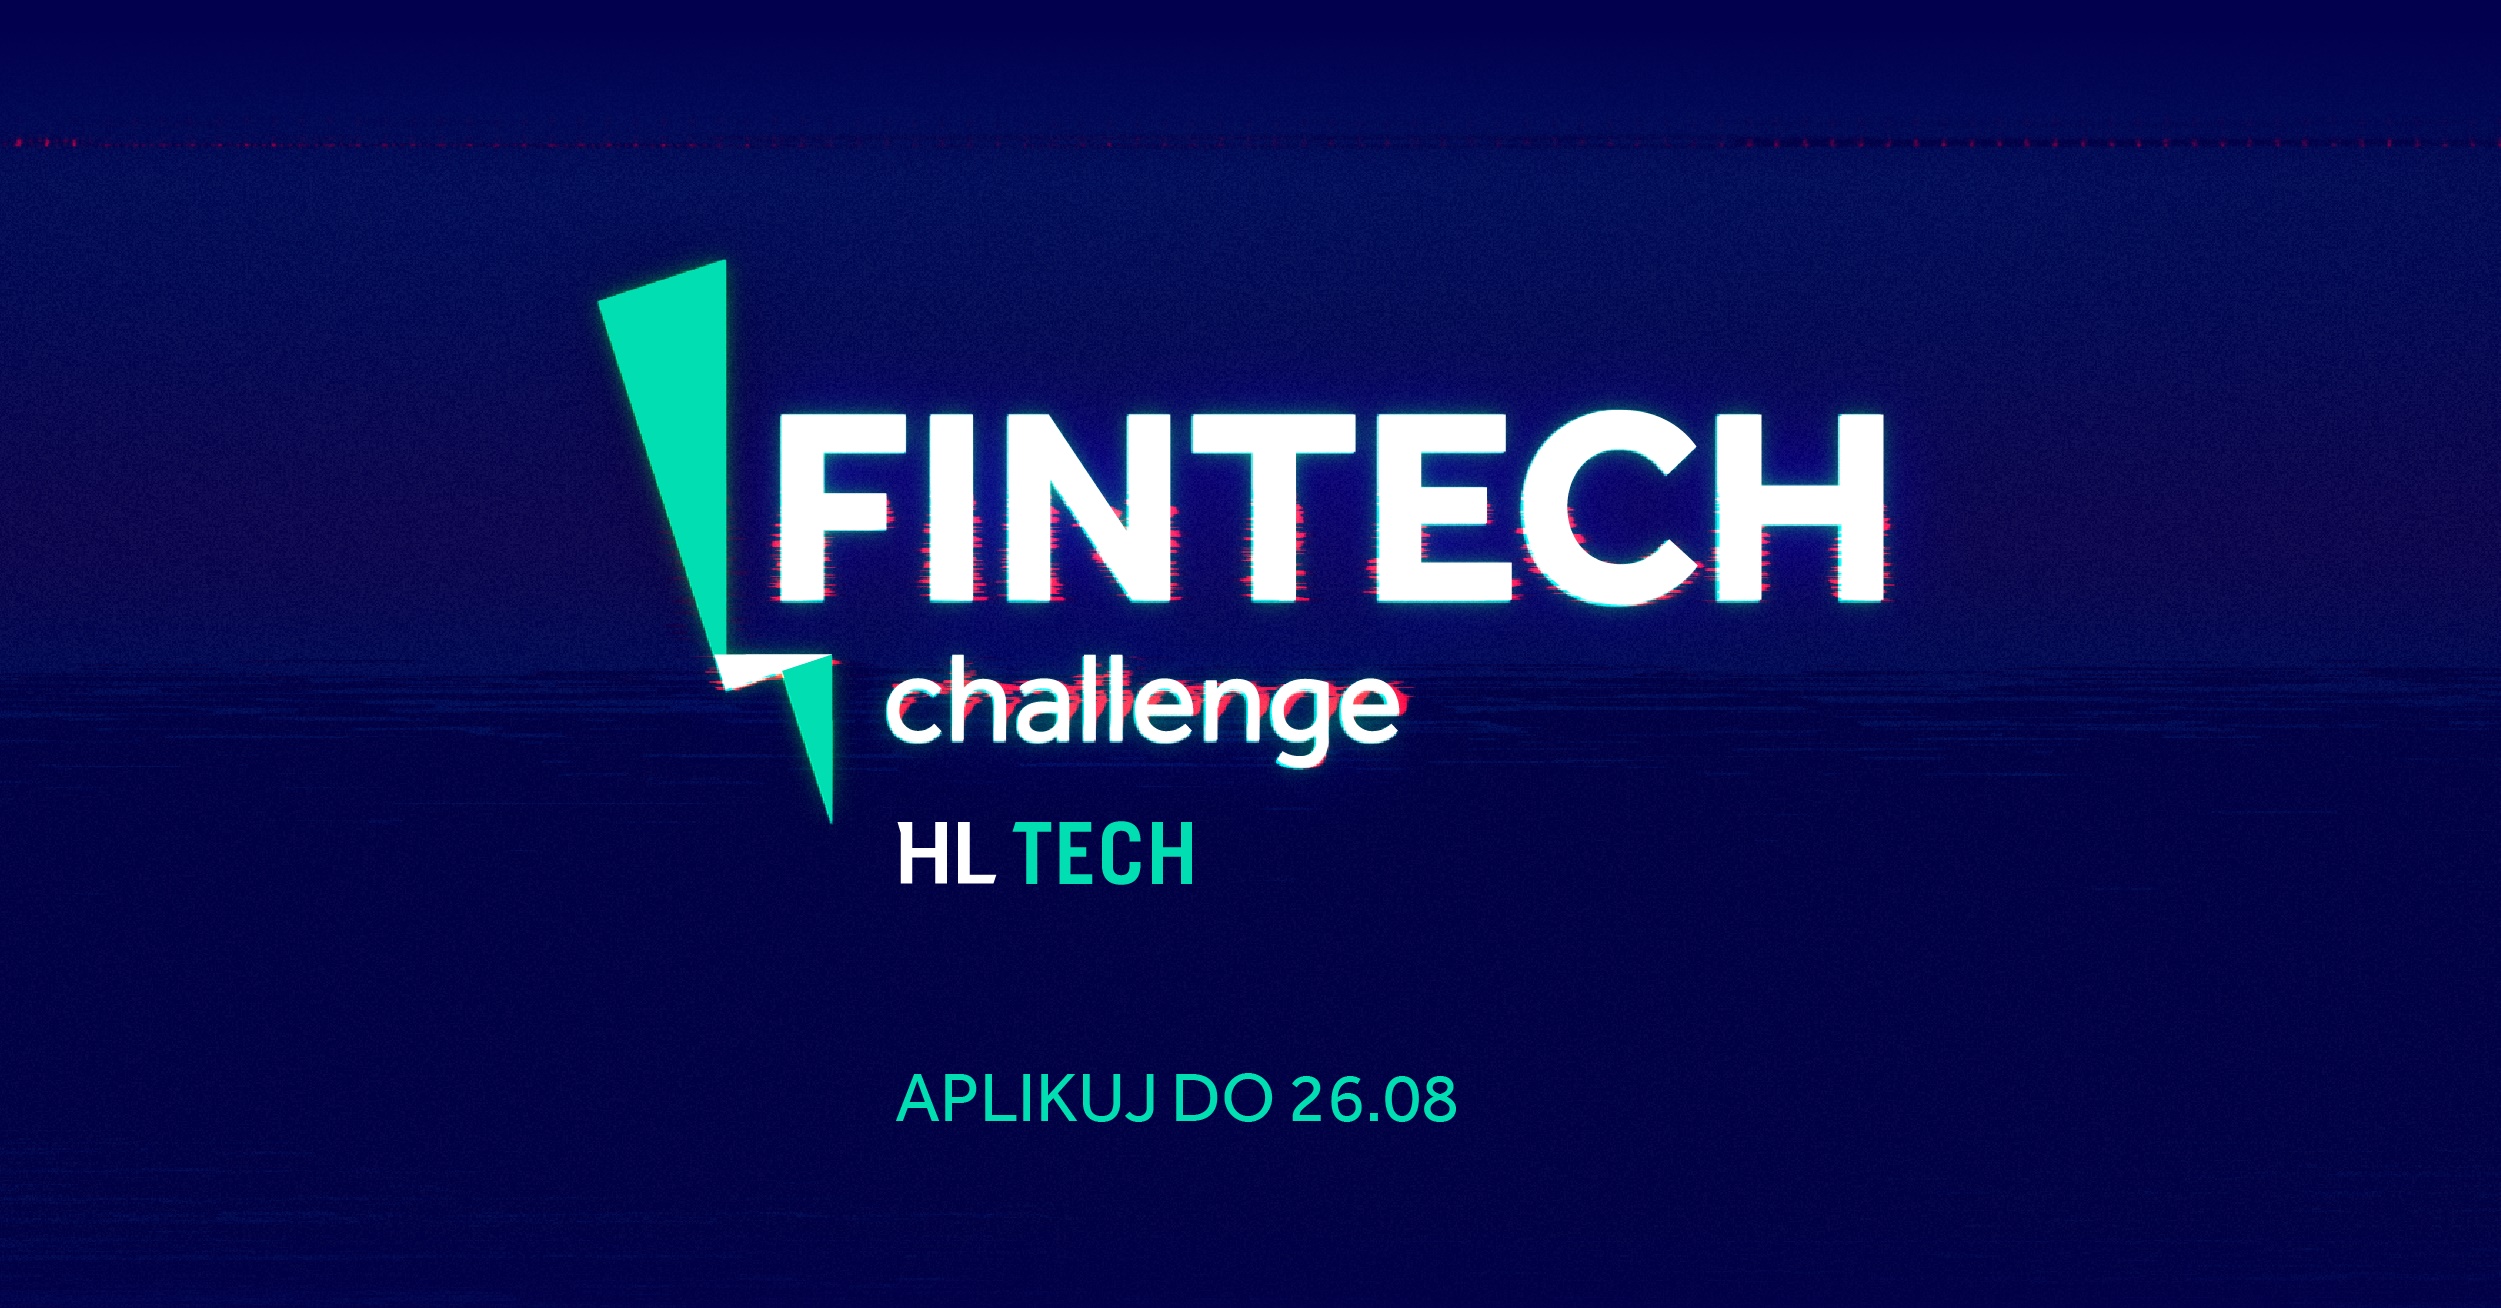 FinTech Challenge – najważniejsze informacje o konkursie 